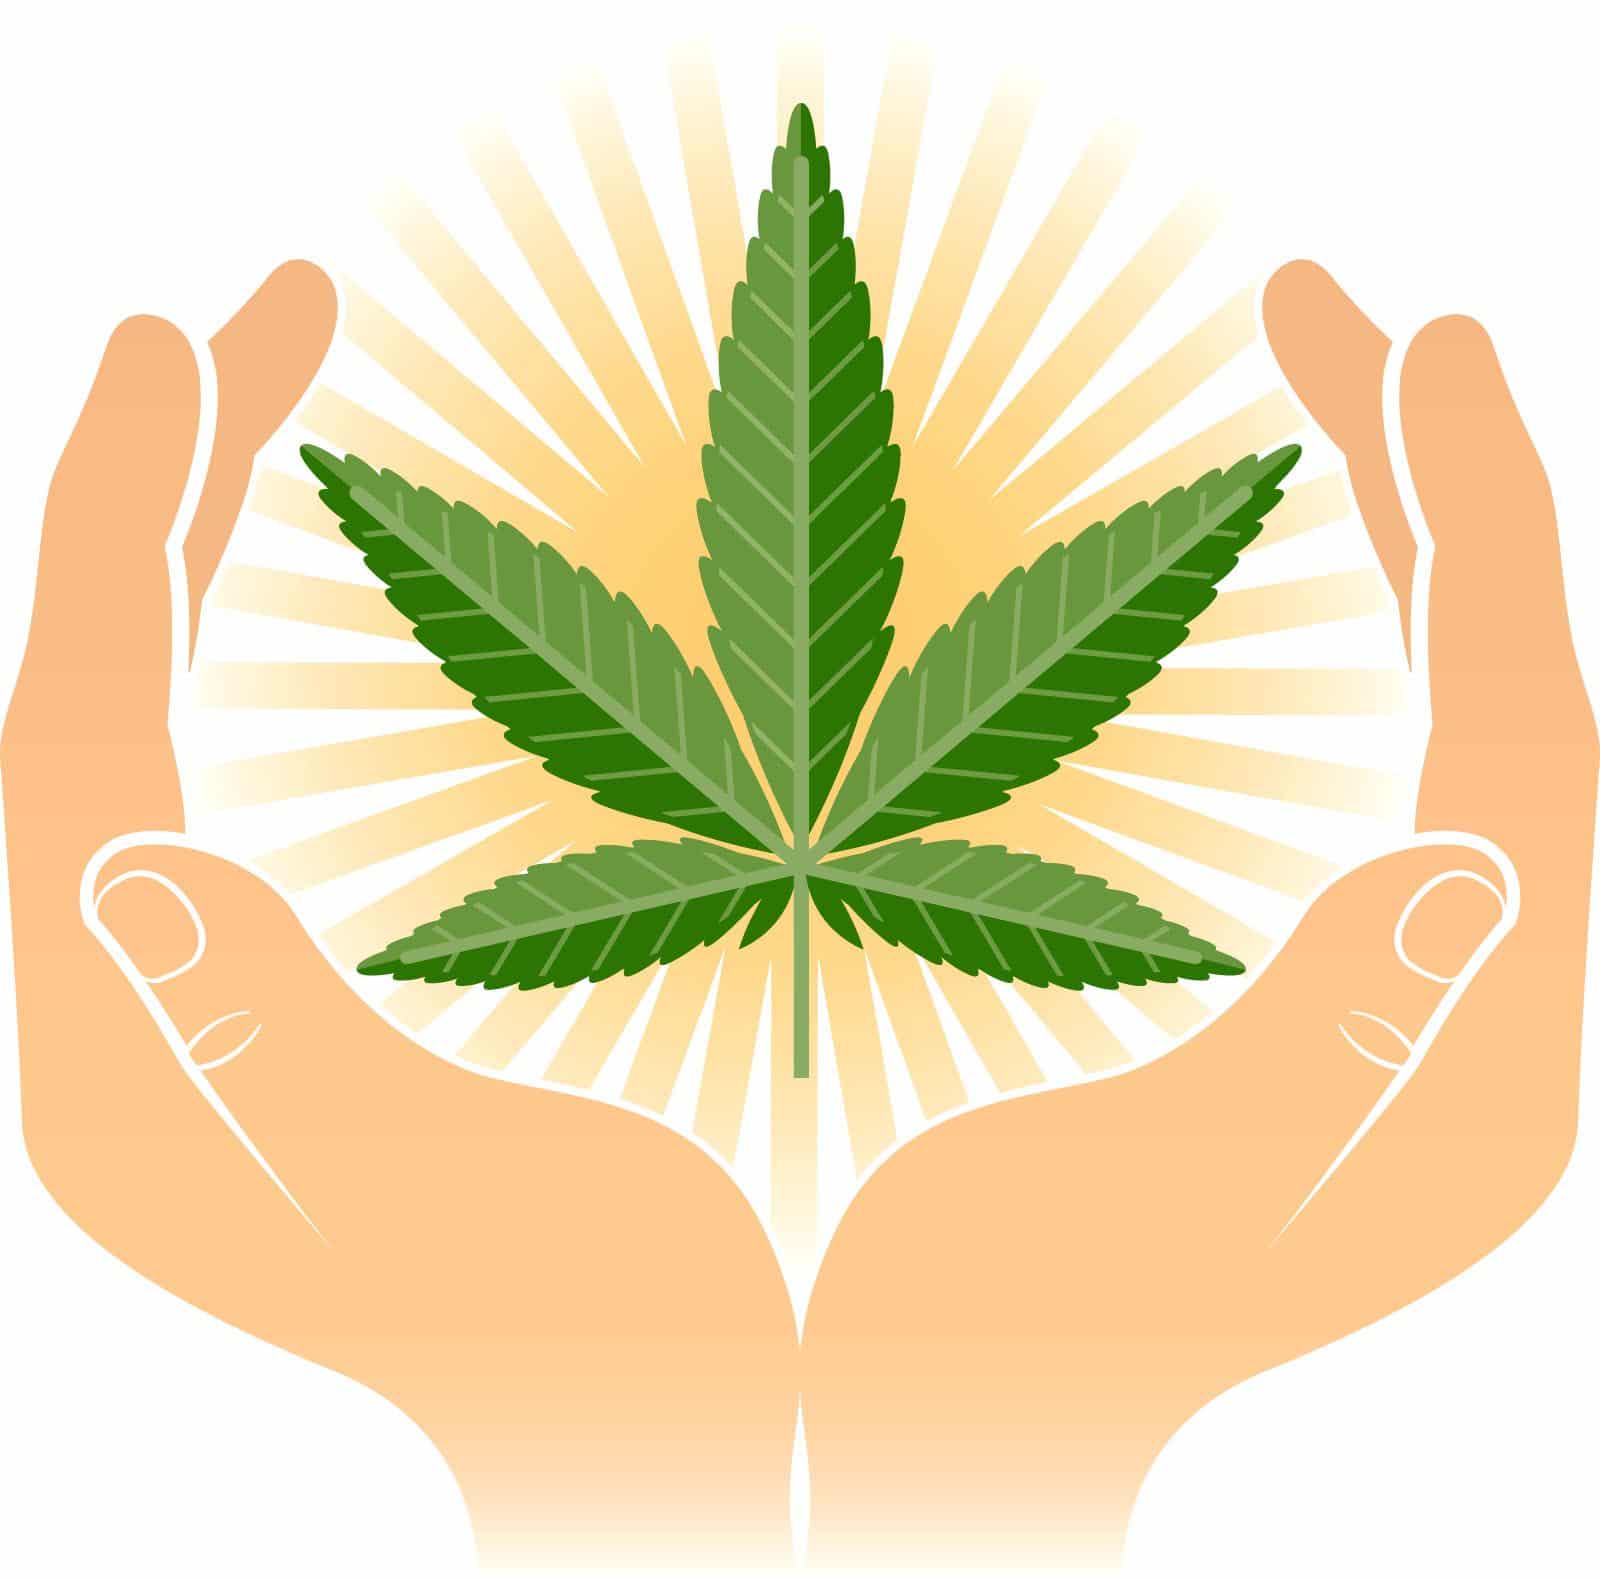 Graines de marijuana à des fins médicinales: les plus importantes, ses utilisations et avantages